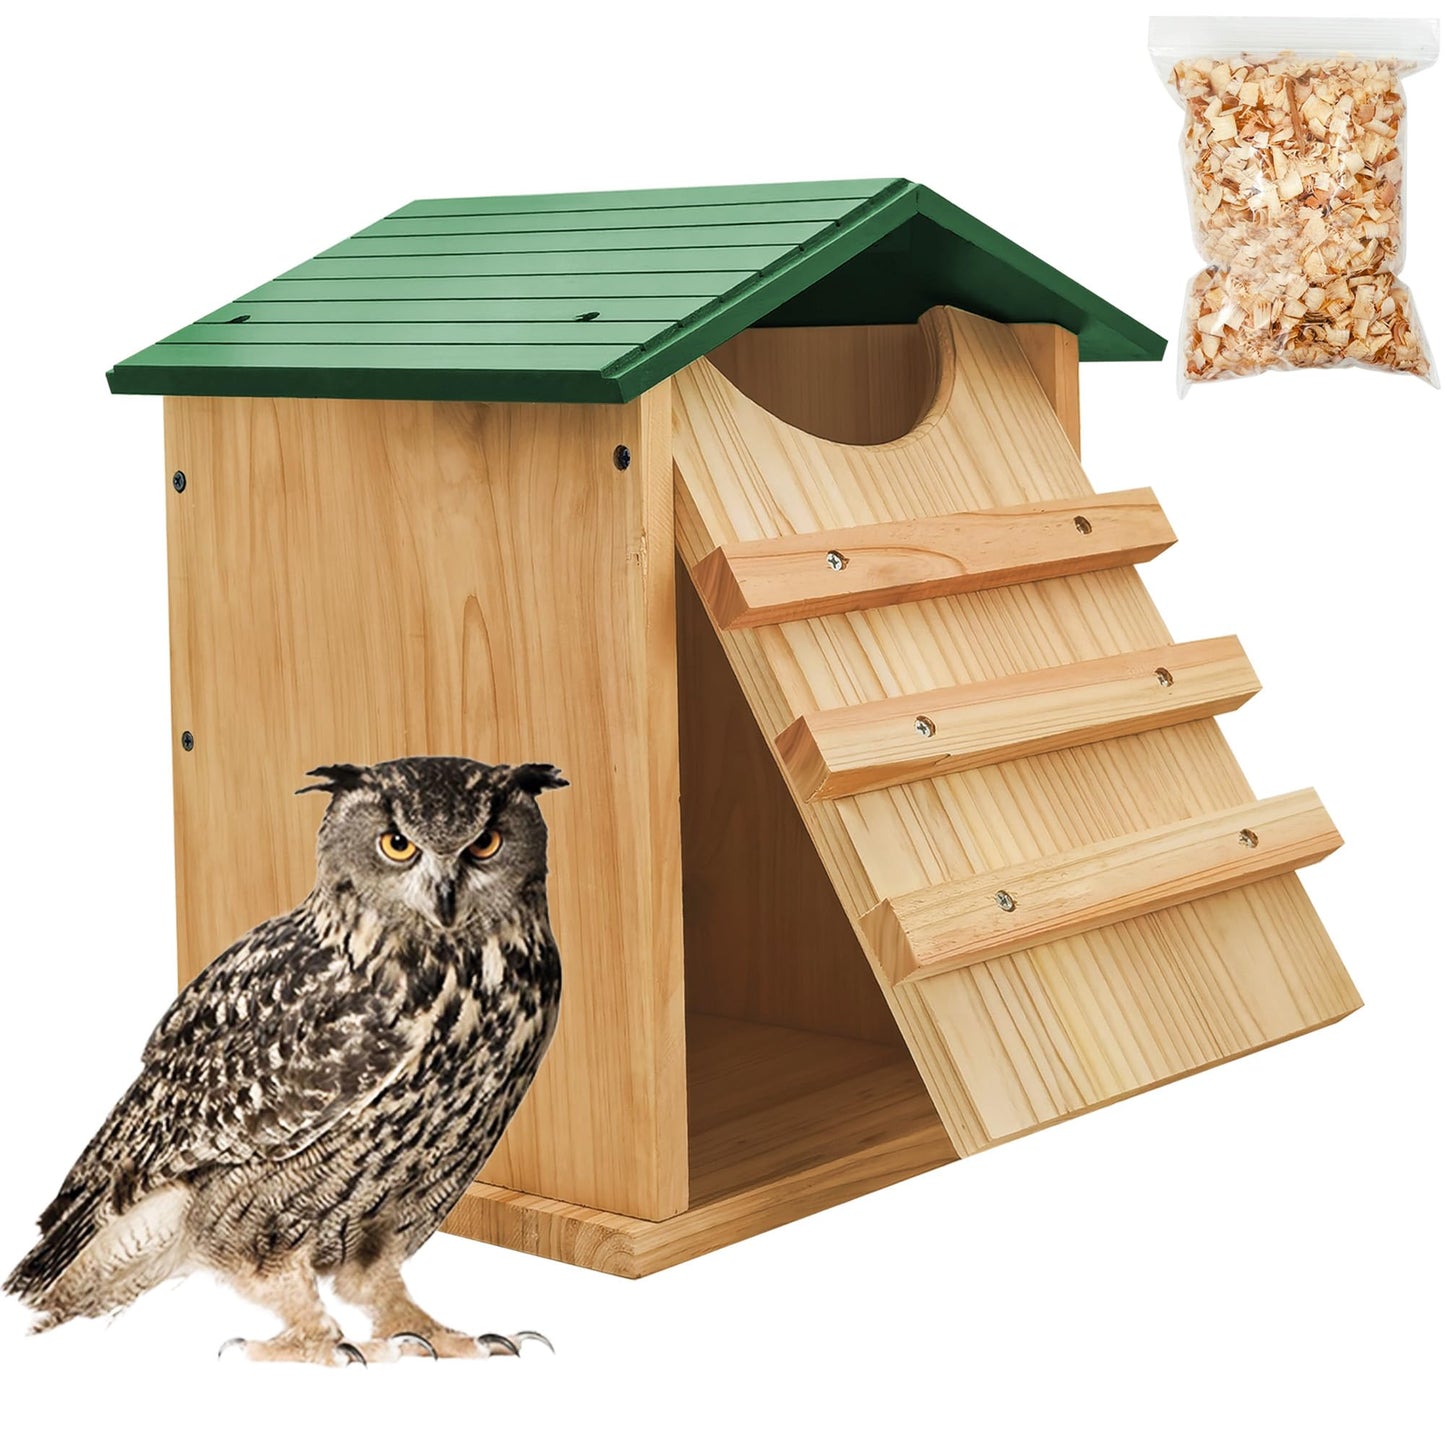 Handmade Cedar Owl House - 14" x 10"